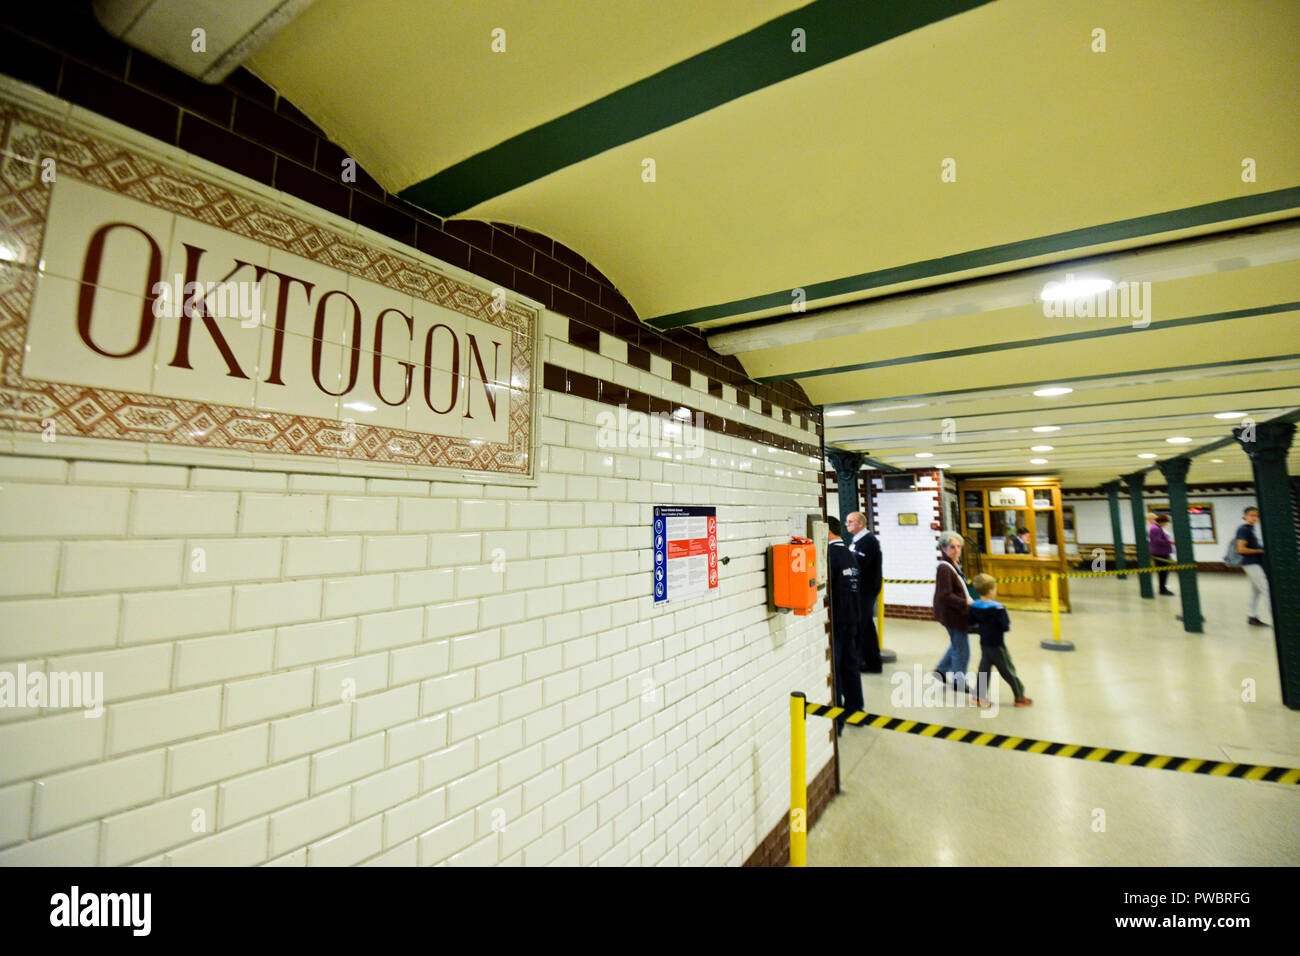 Oktogon stazione della metropolitana, Budapest, Ungheria Foto Stock